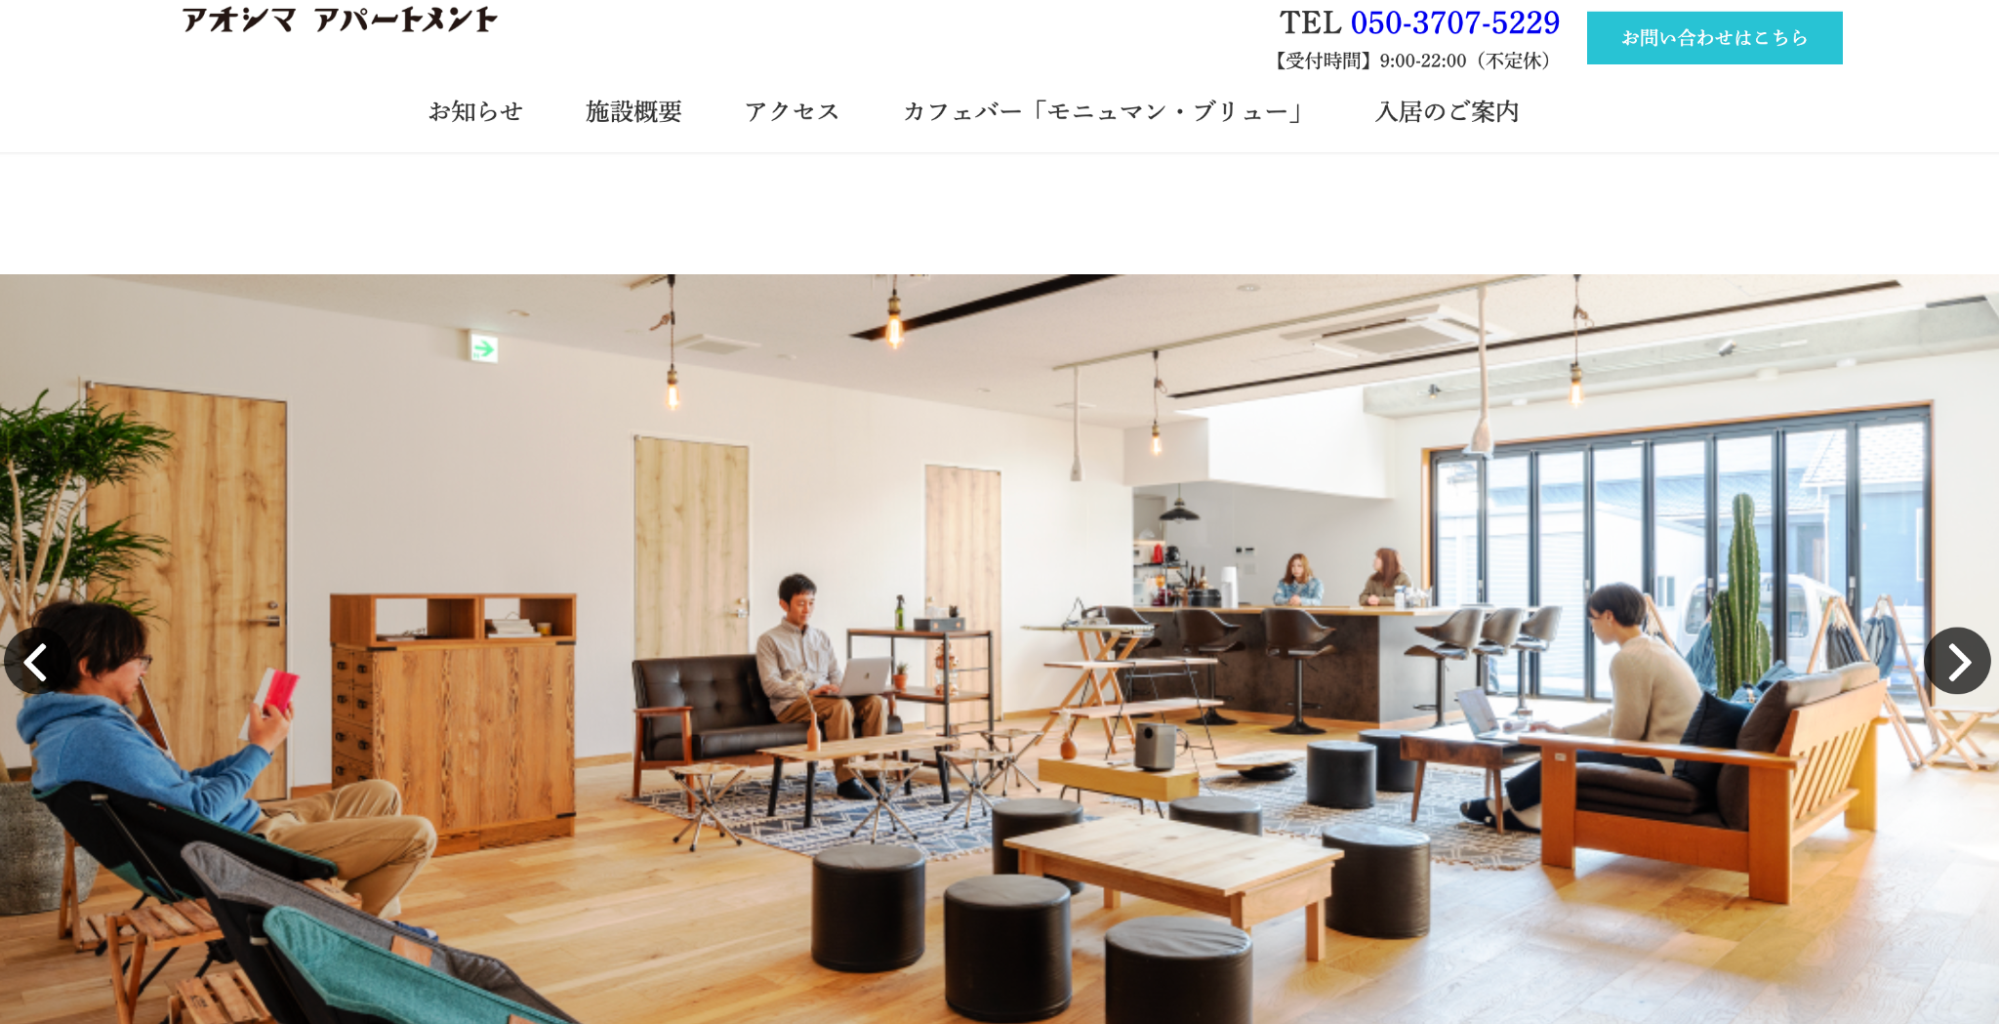 アオシマアパートメントのホームページの画像